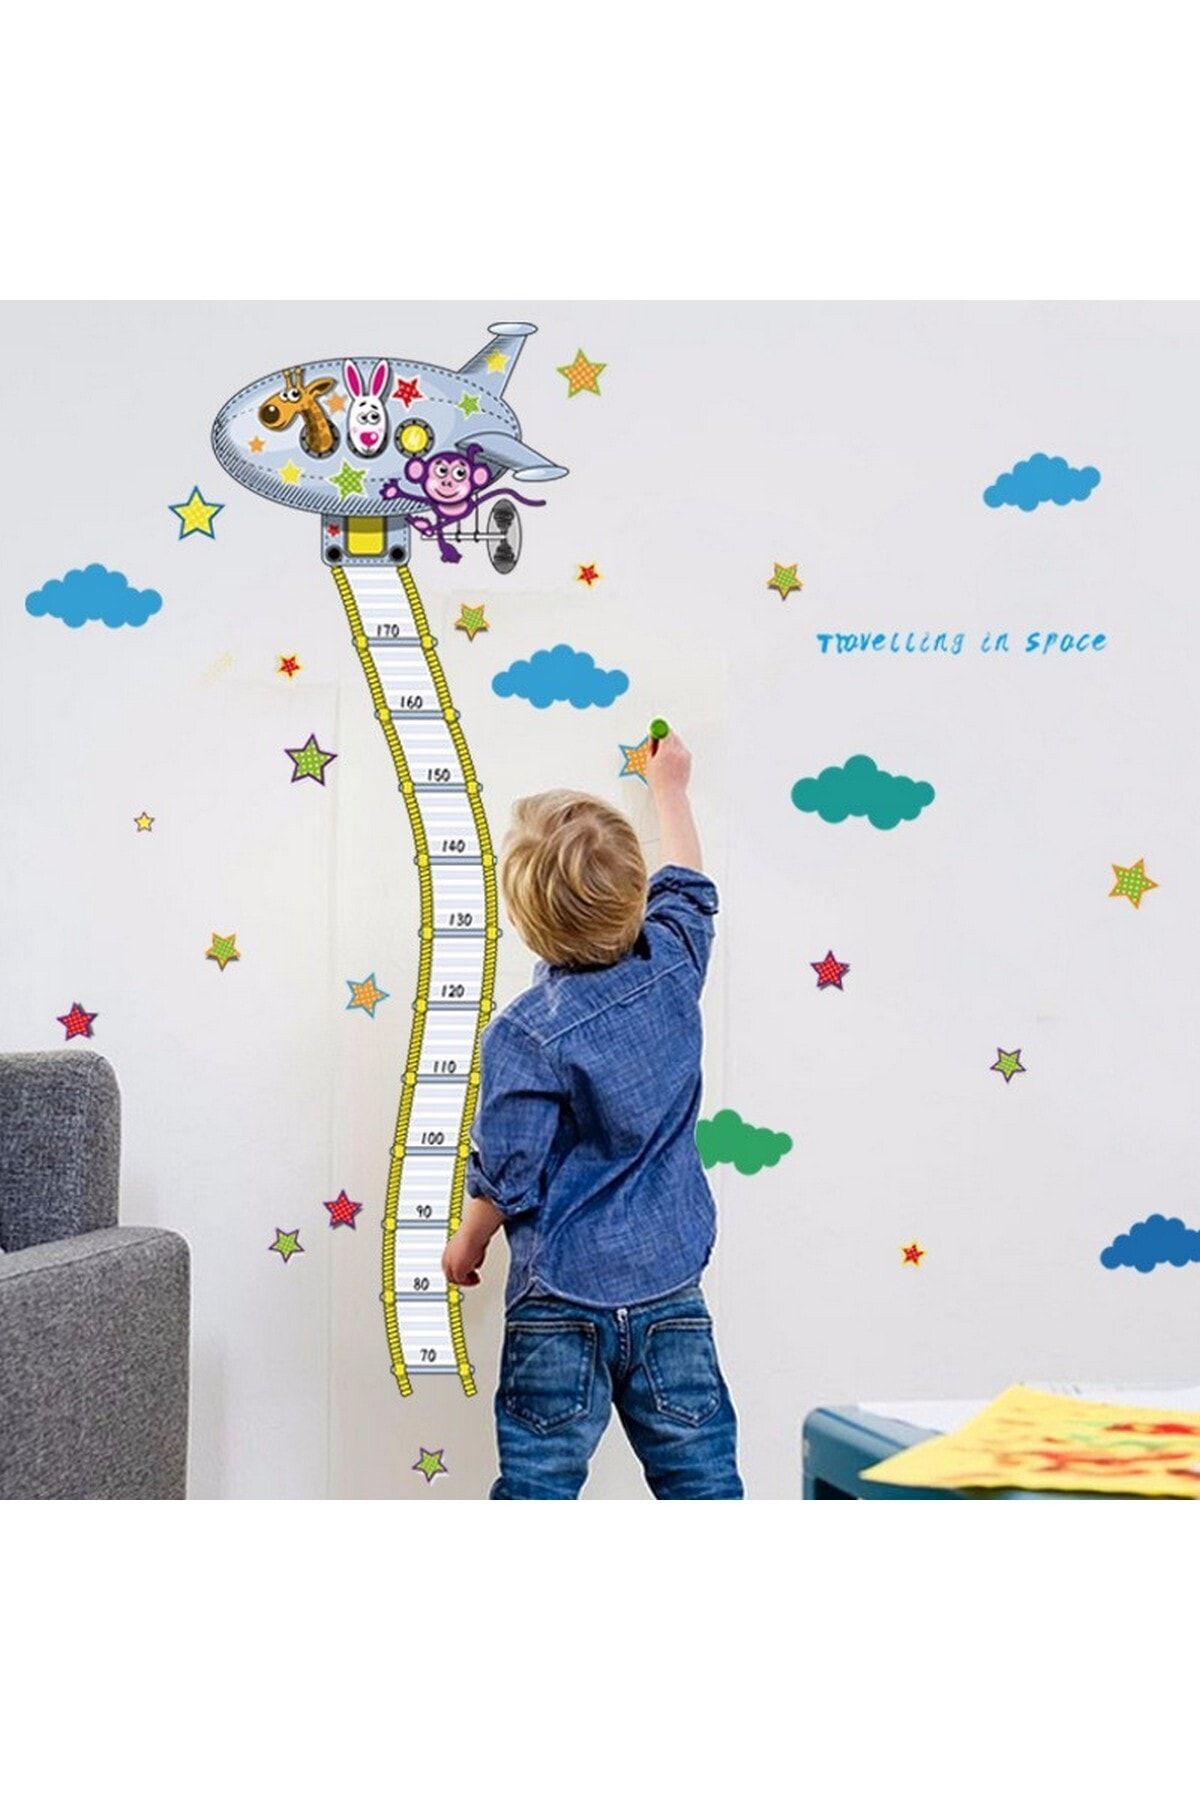 CRYSTAL KIDS Uzay Mekiği Boy Ölçen Çocuk Odası Dekoru Duvar Süsü Duvar Sticker